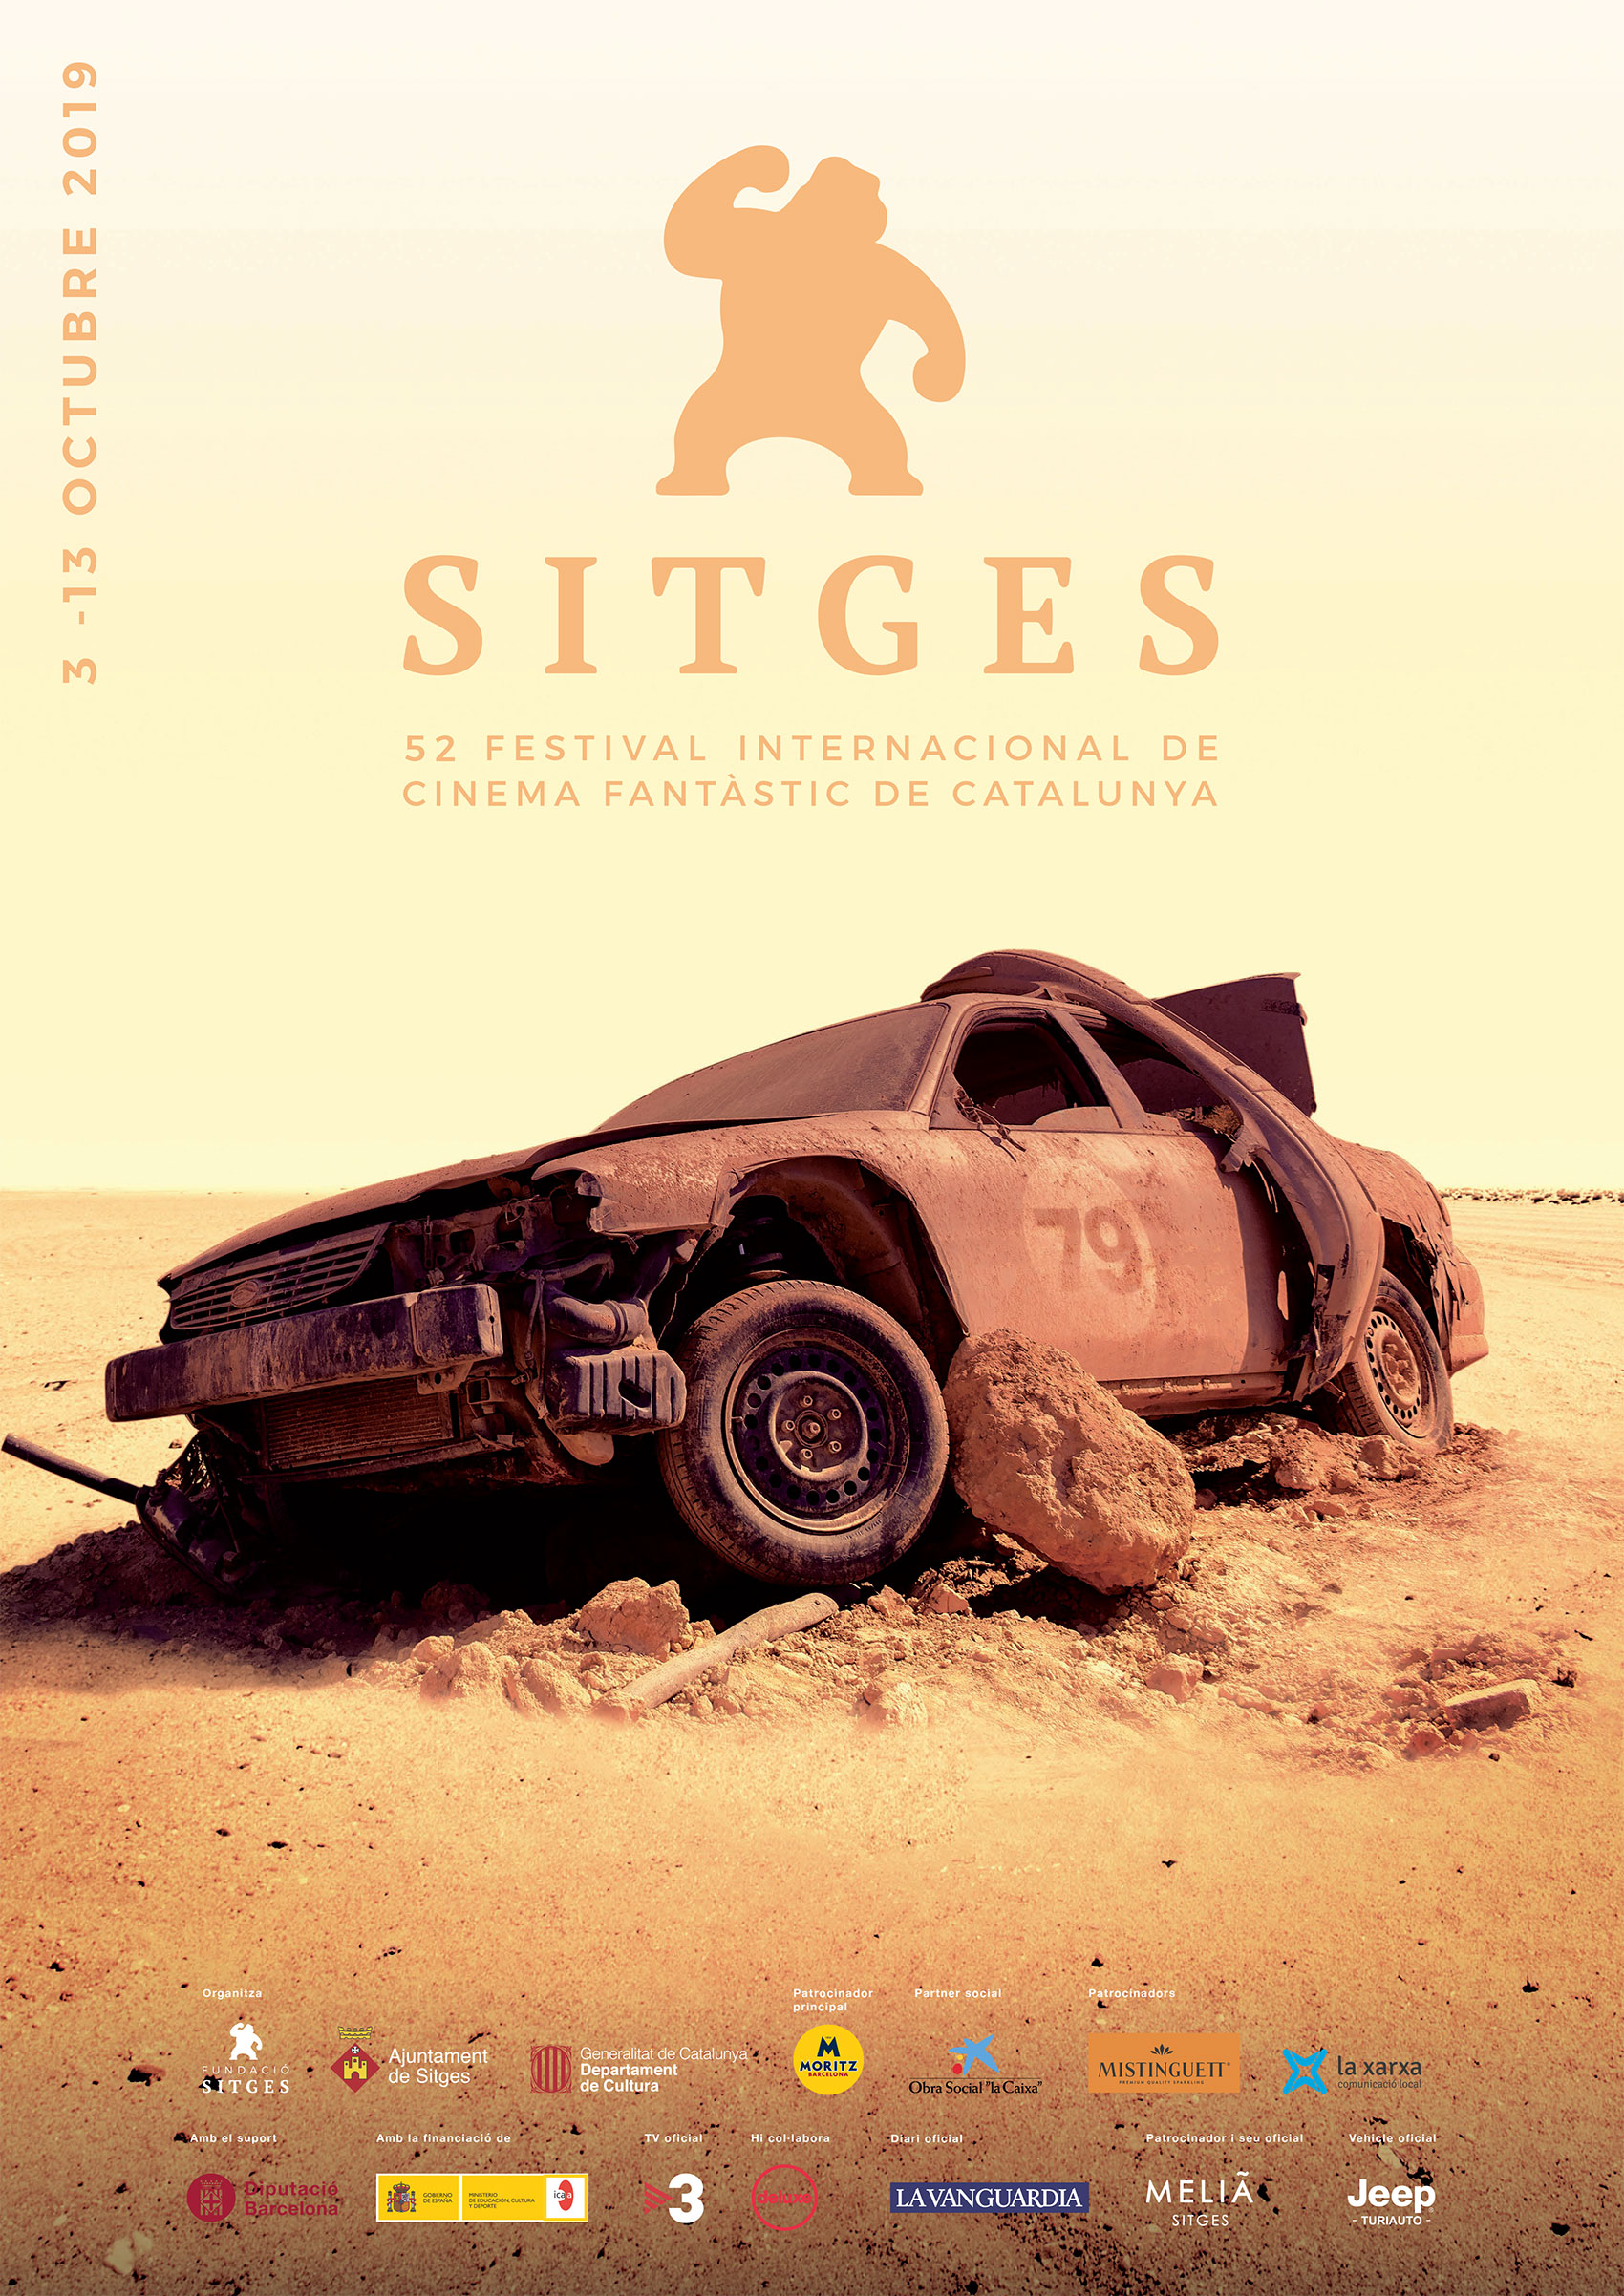 Un cotxe abandonat al desert que recorda la pel·lícula Mad Max